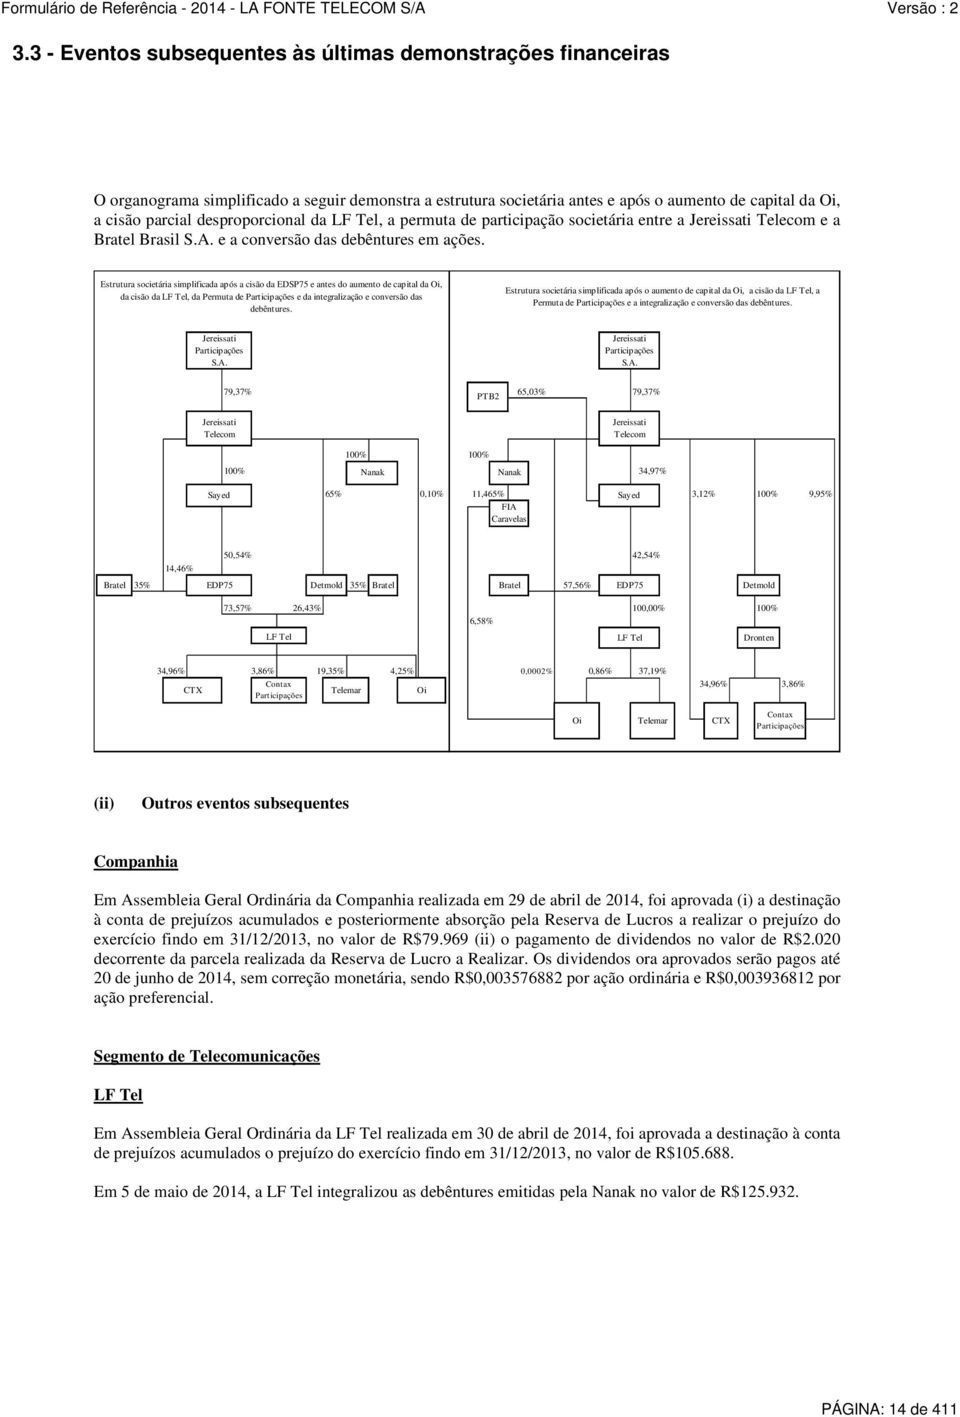 Estrutura societária simplificada após a cisão da EDSP75 e antes do aumento de capital da Oi, da cisão da LF Tel, da Permuta de Participações e da integralização e conversão das debêntures.